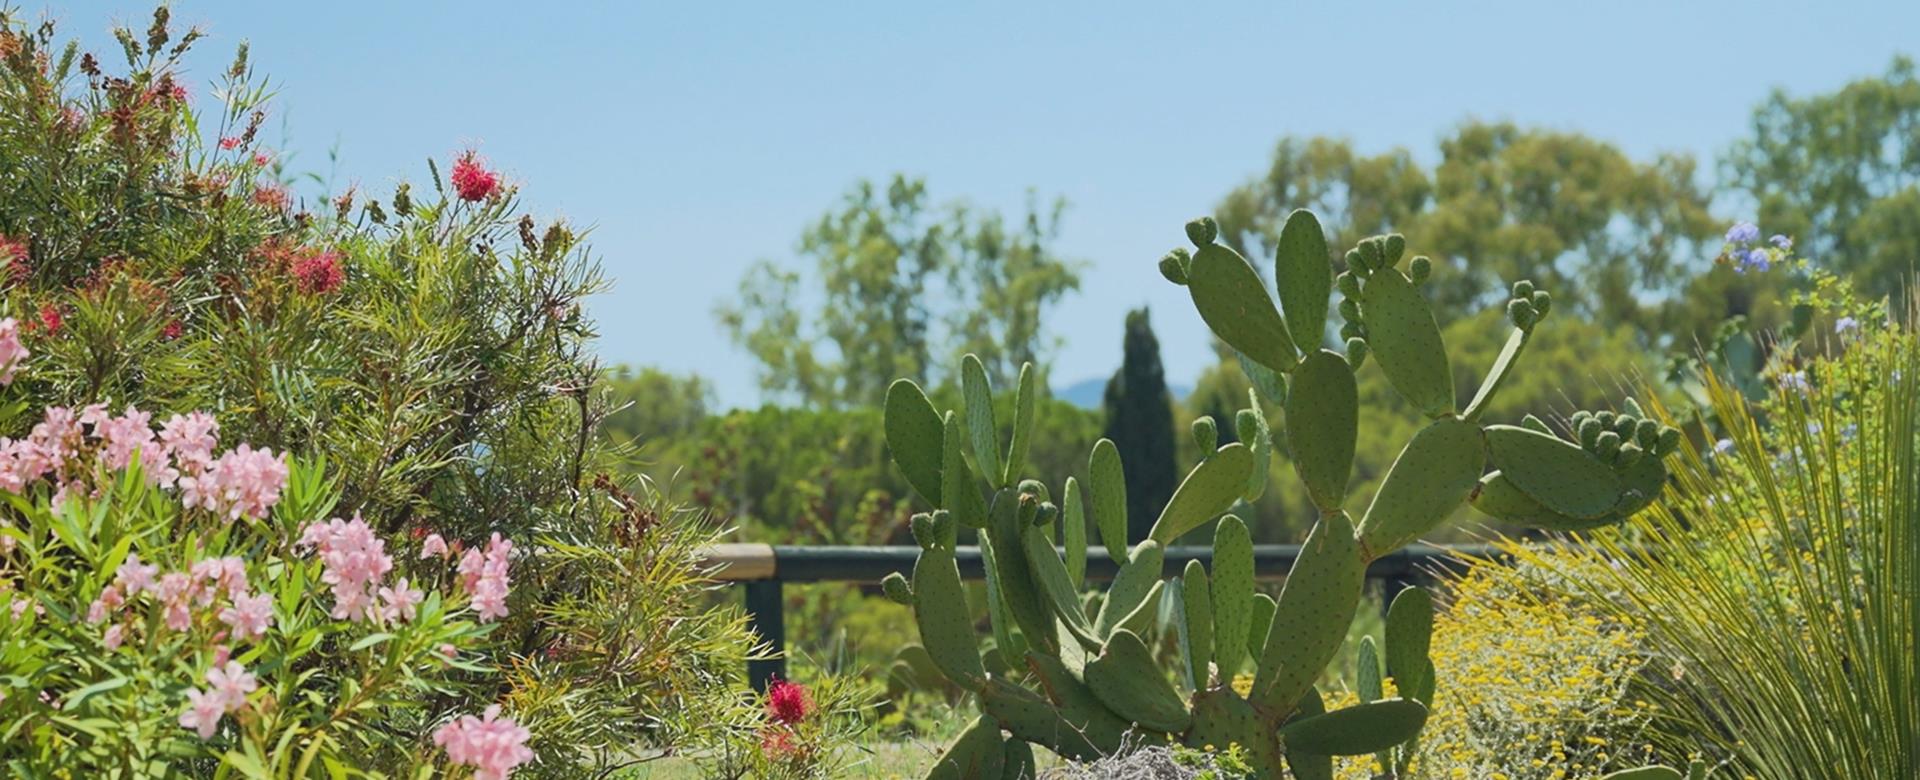 Vue de la mer entre les cactus depuis le jardin de l’hôtel 4 étoiles de la Fossette